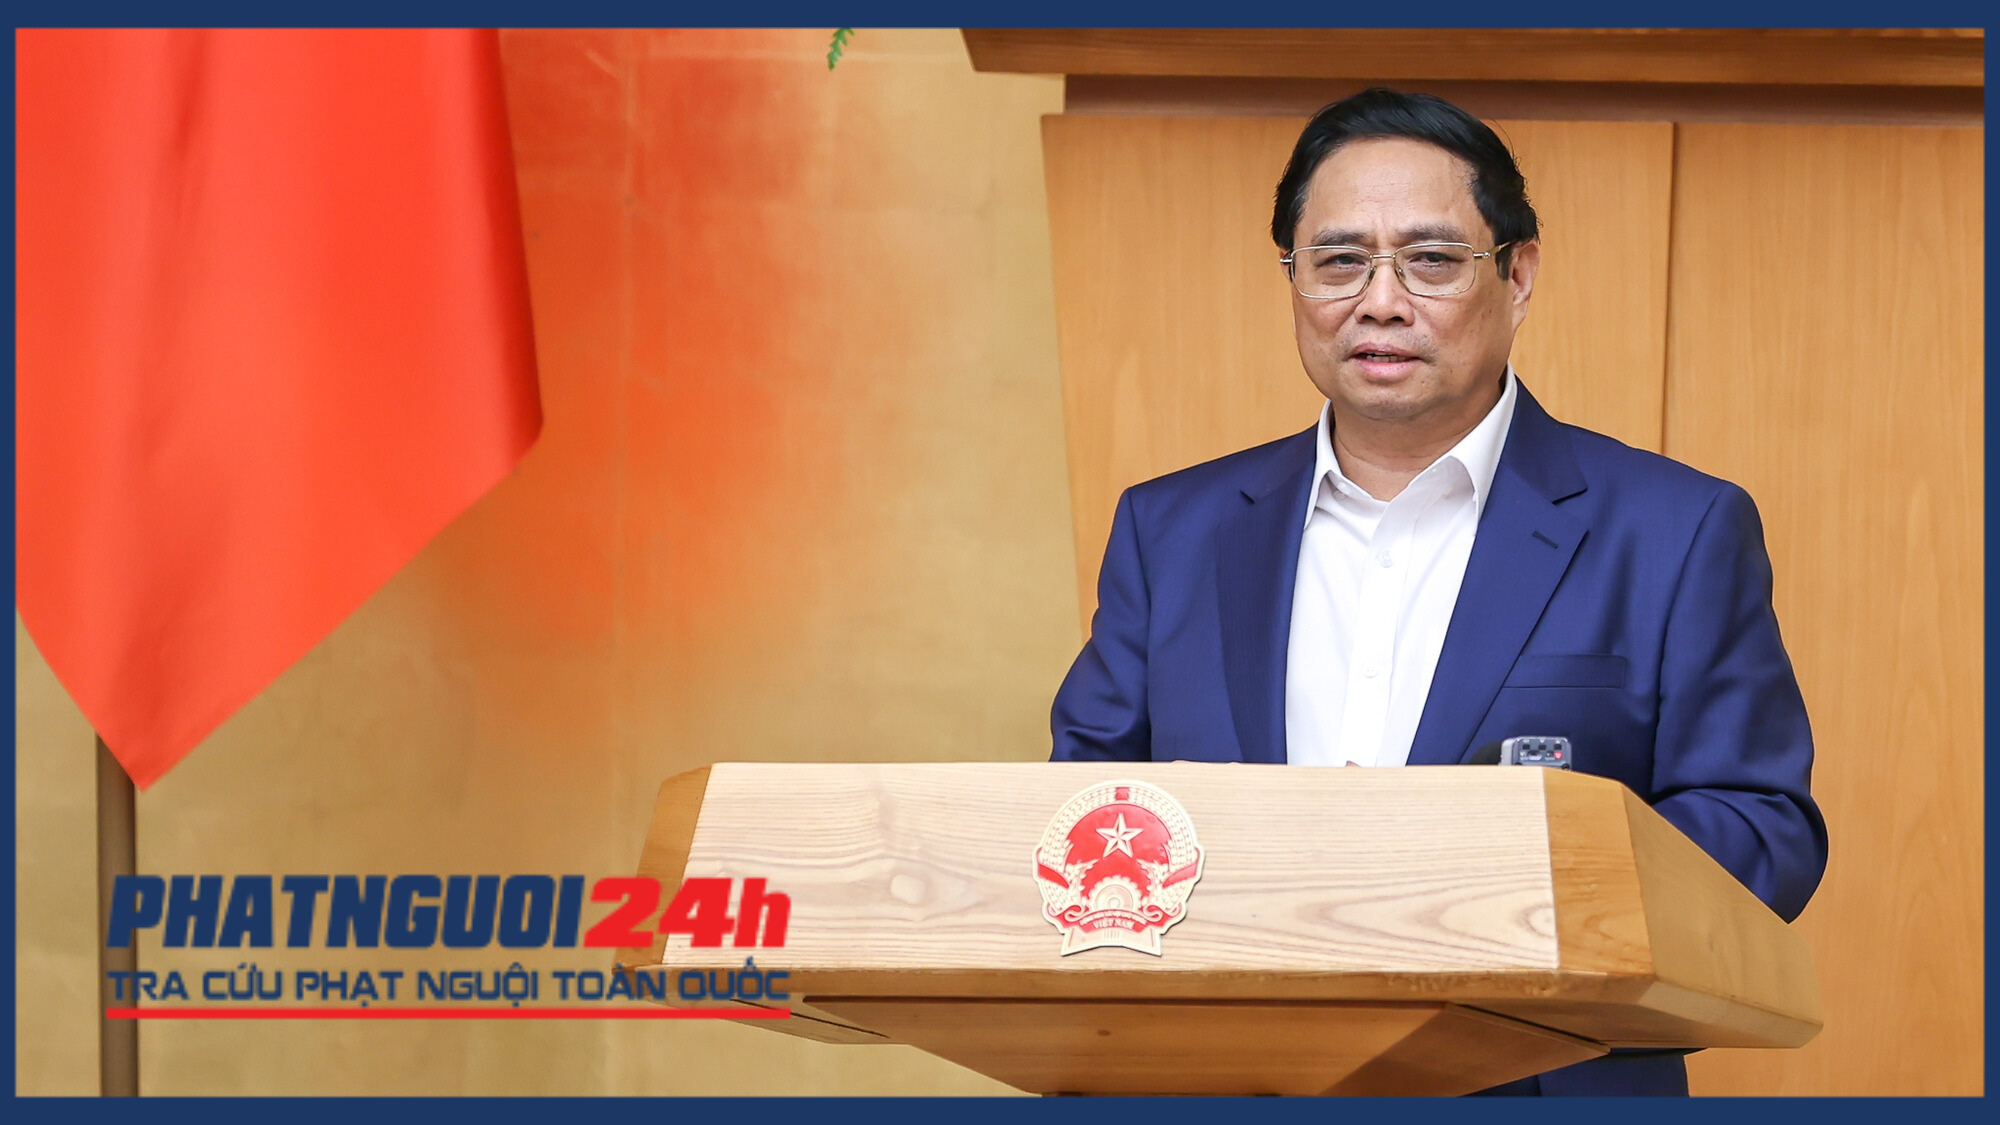 Thủ tướng Phạm Minh Chính nghiêm cấm cán bộ yêu cầu người dân cung cấp giấy tờ đã được số hóa